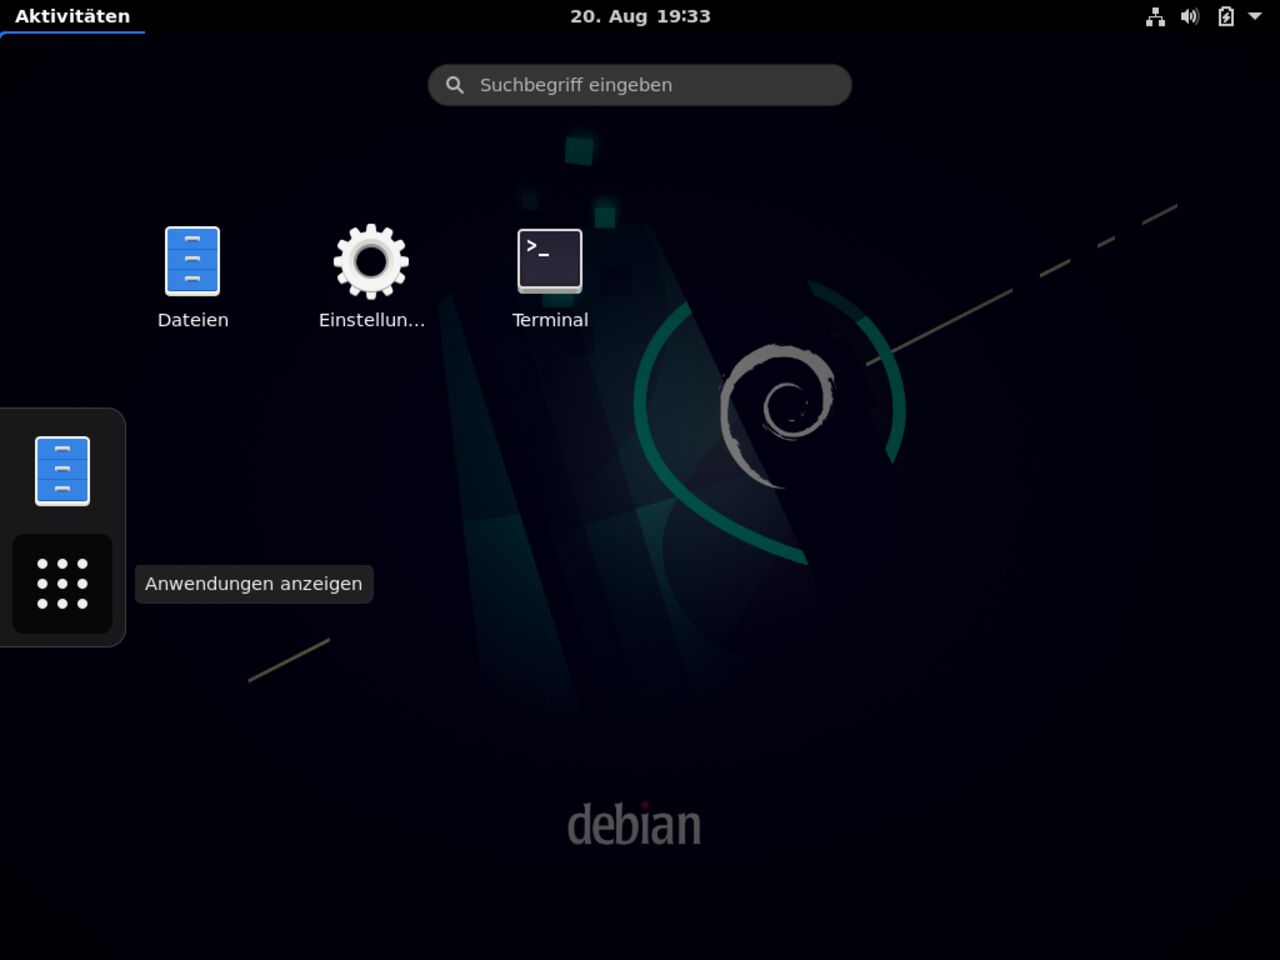 Mein erster Linux-Laptop - Die Installation von Debian mit einer minimalen grafischen Umgebung ist einsatzbereit